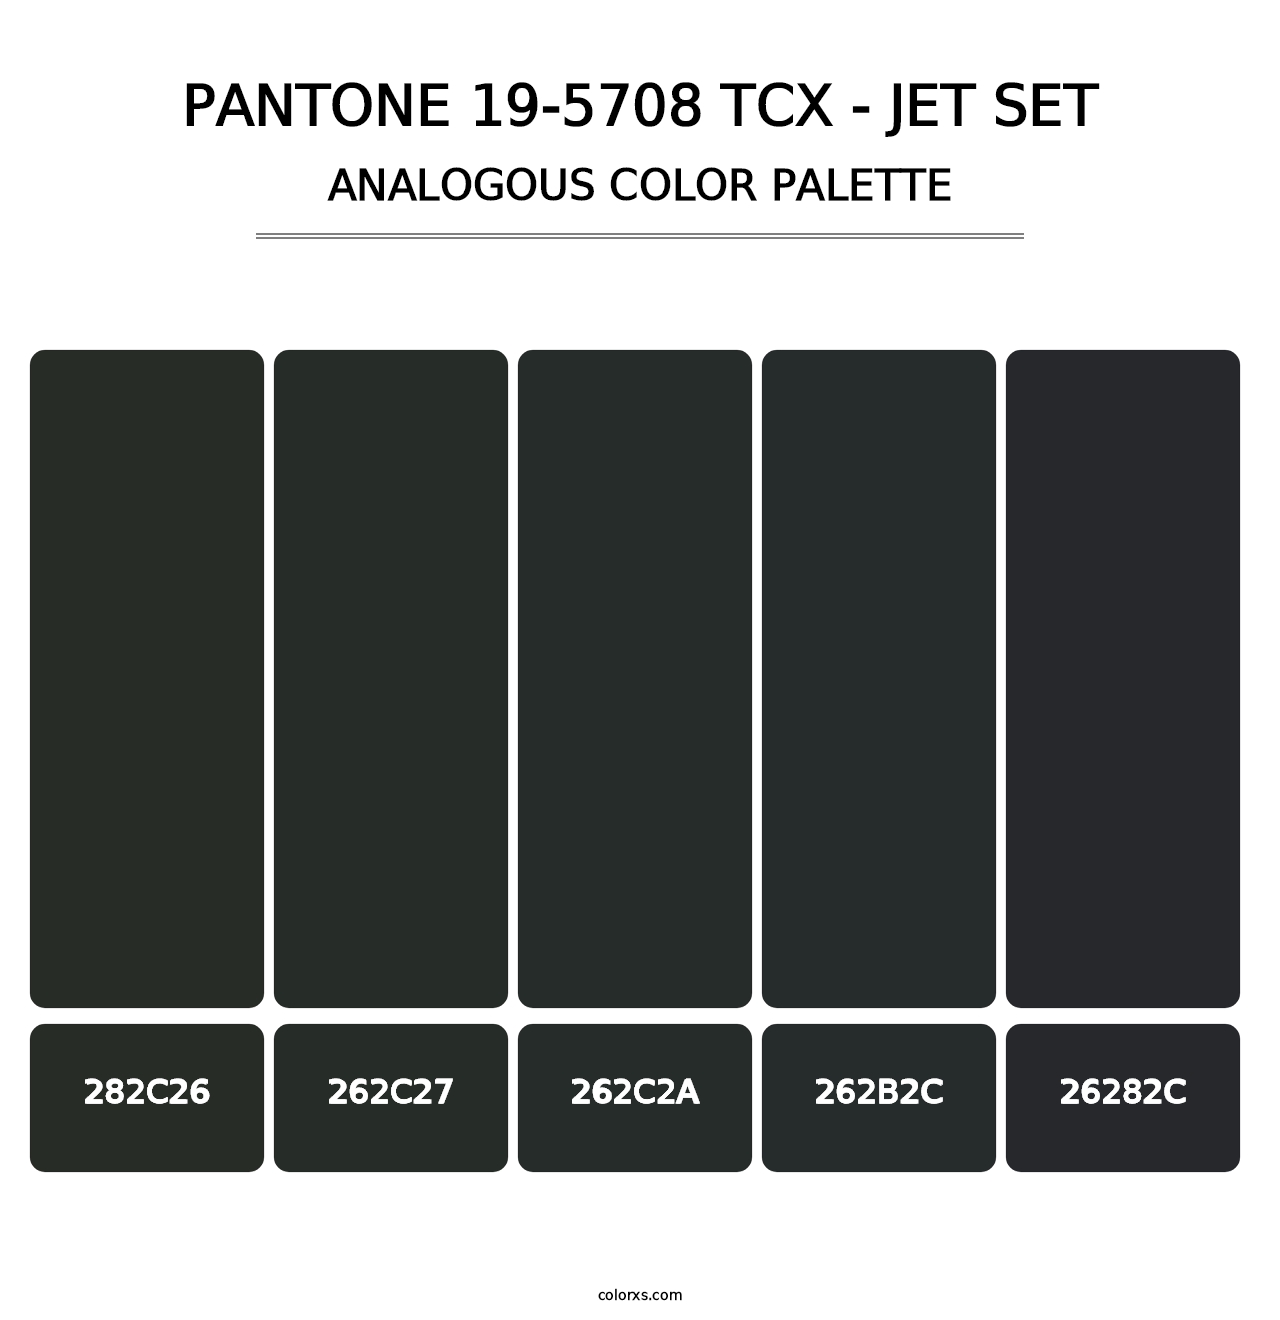 PANTONE 19-5708 TCX - Jet Set - Analogous Color Palette